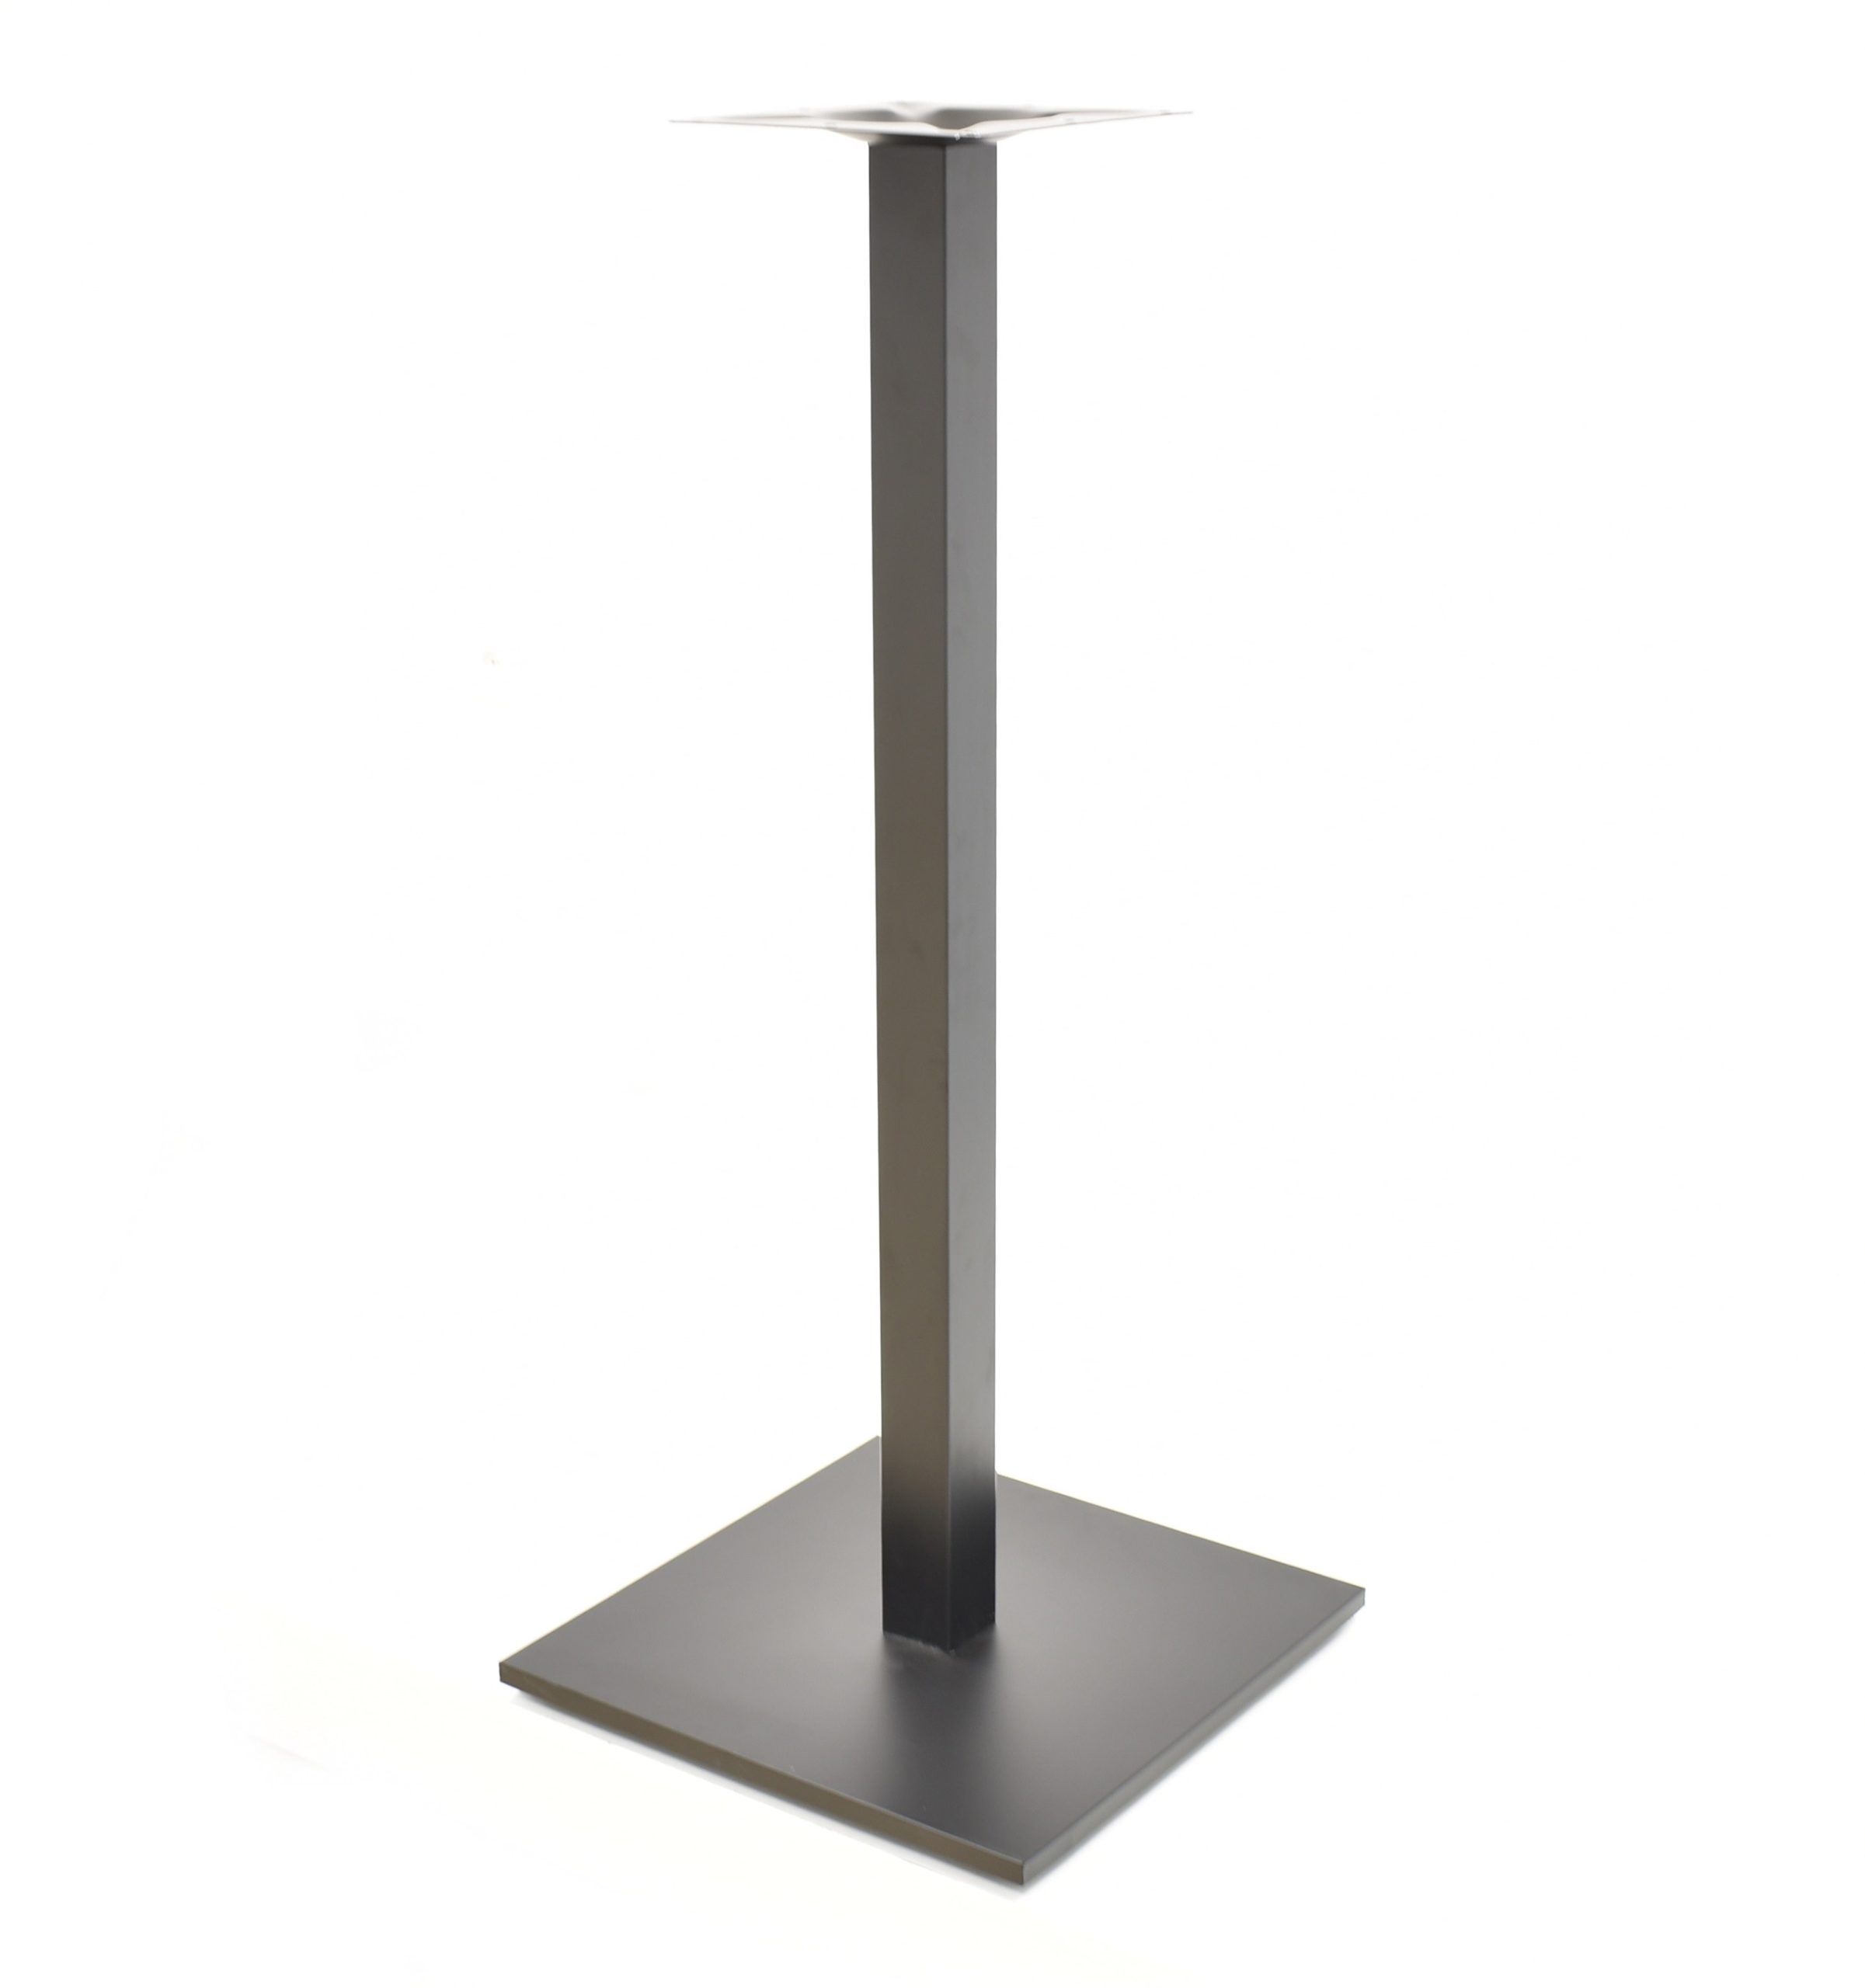 Base de mesa BEVERLY, alta, tubo cuadrado, negra, base de 45 x 45 cms, altura 110 cms